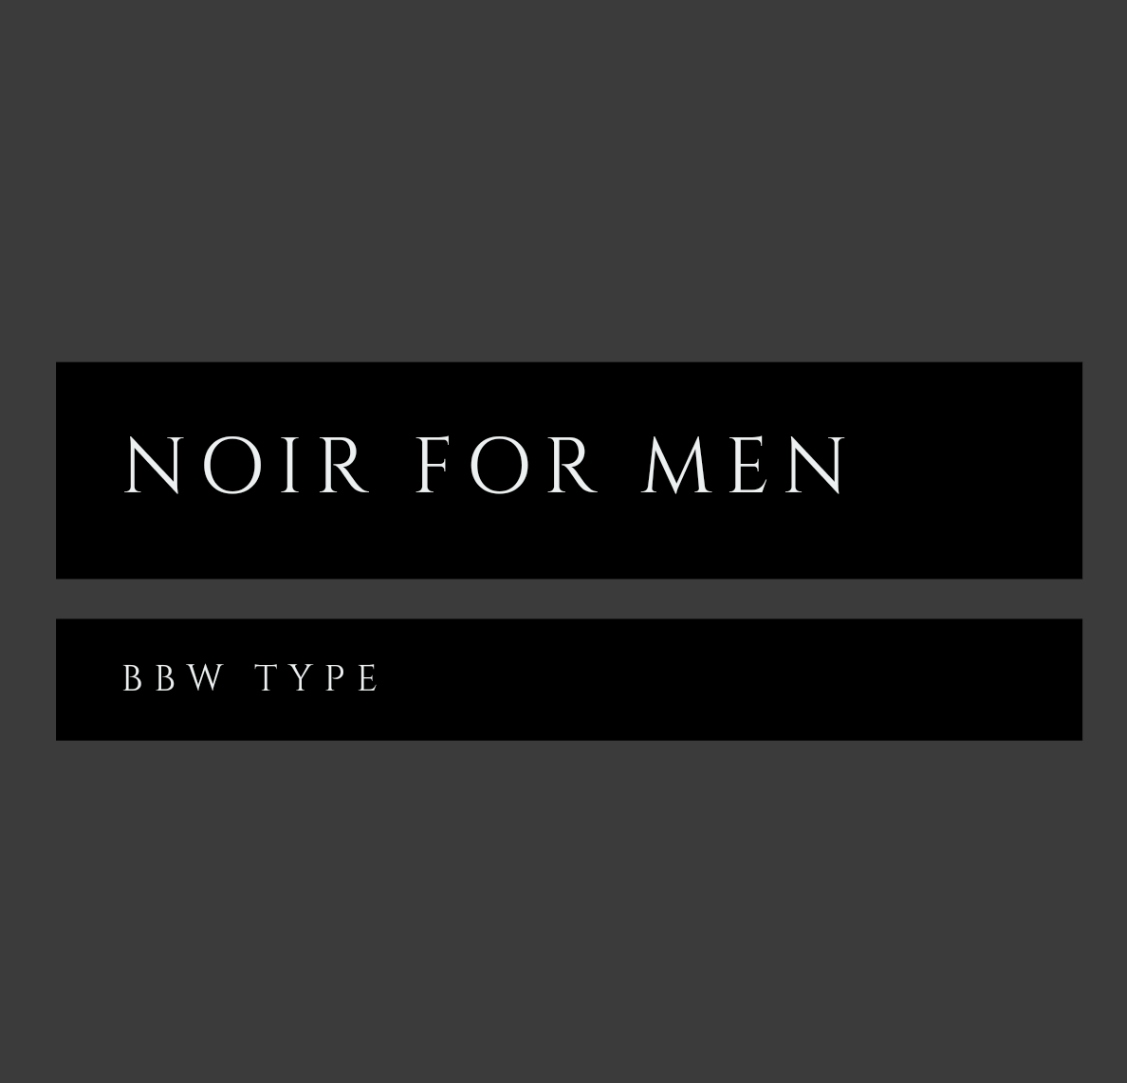 Noir for men bbw type fragrance oil